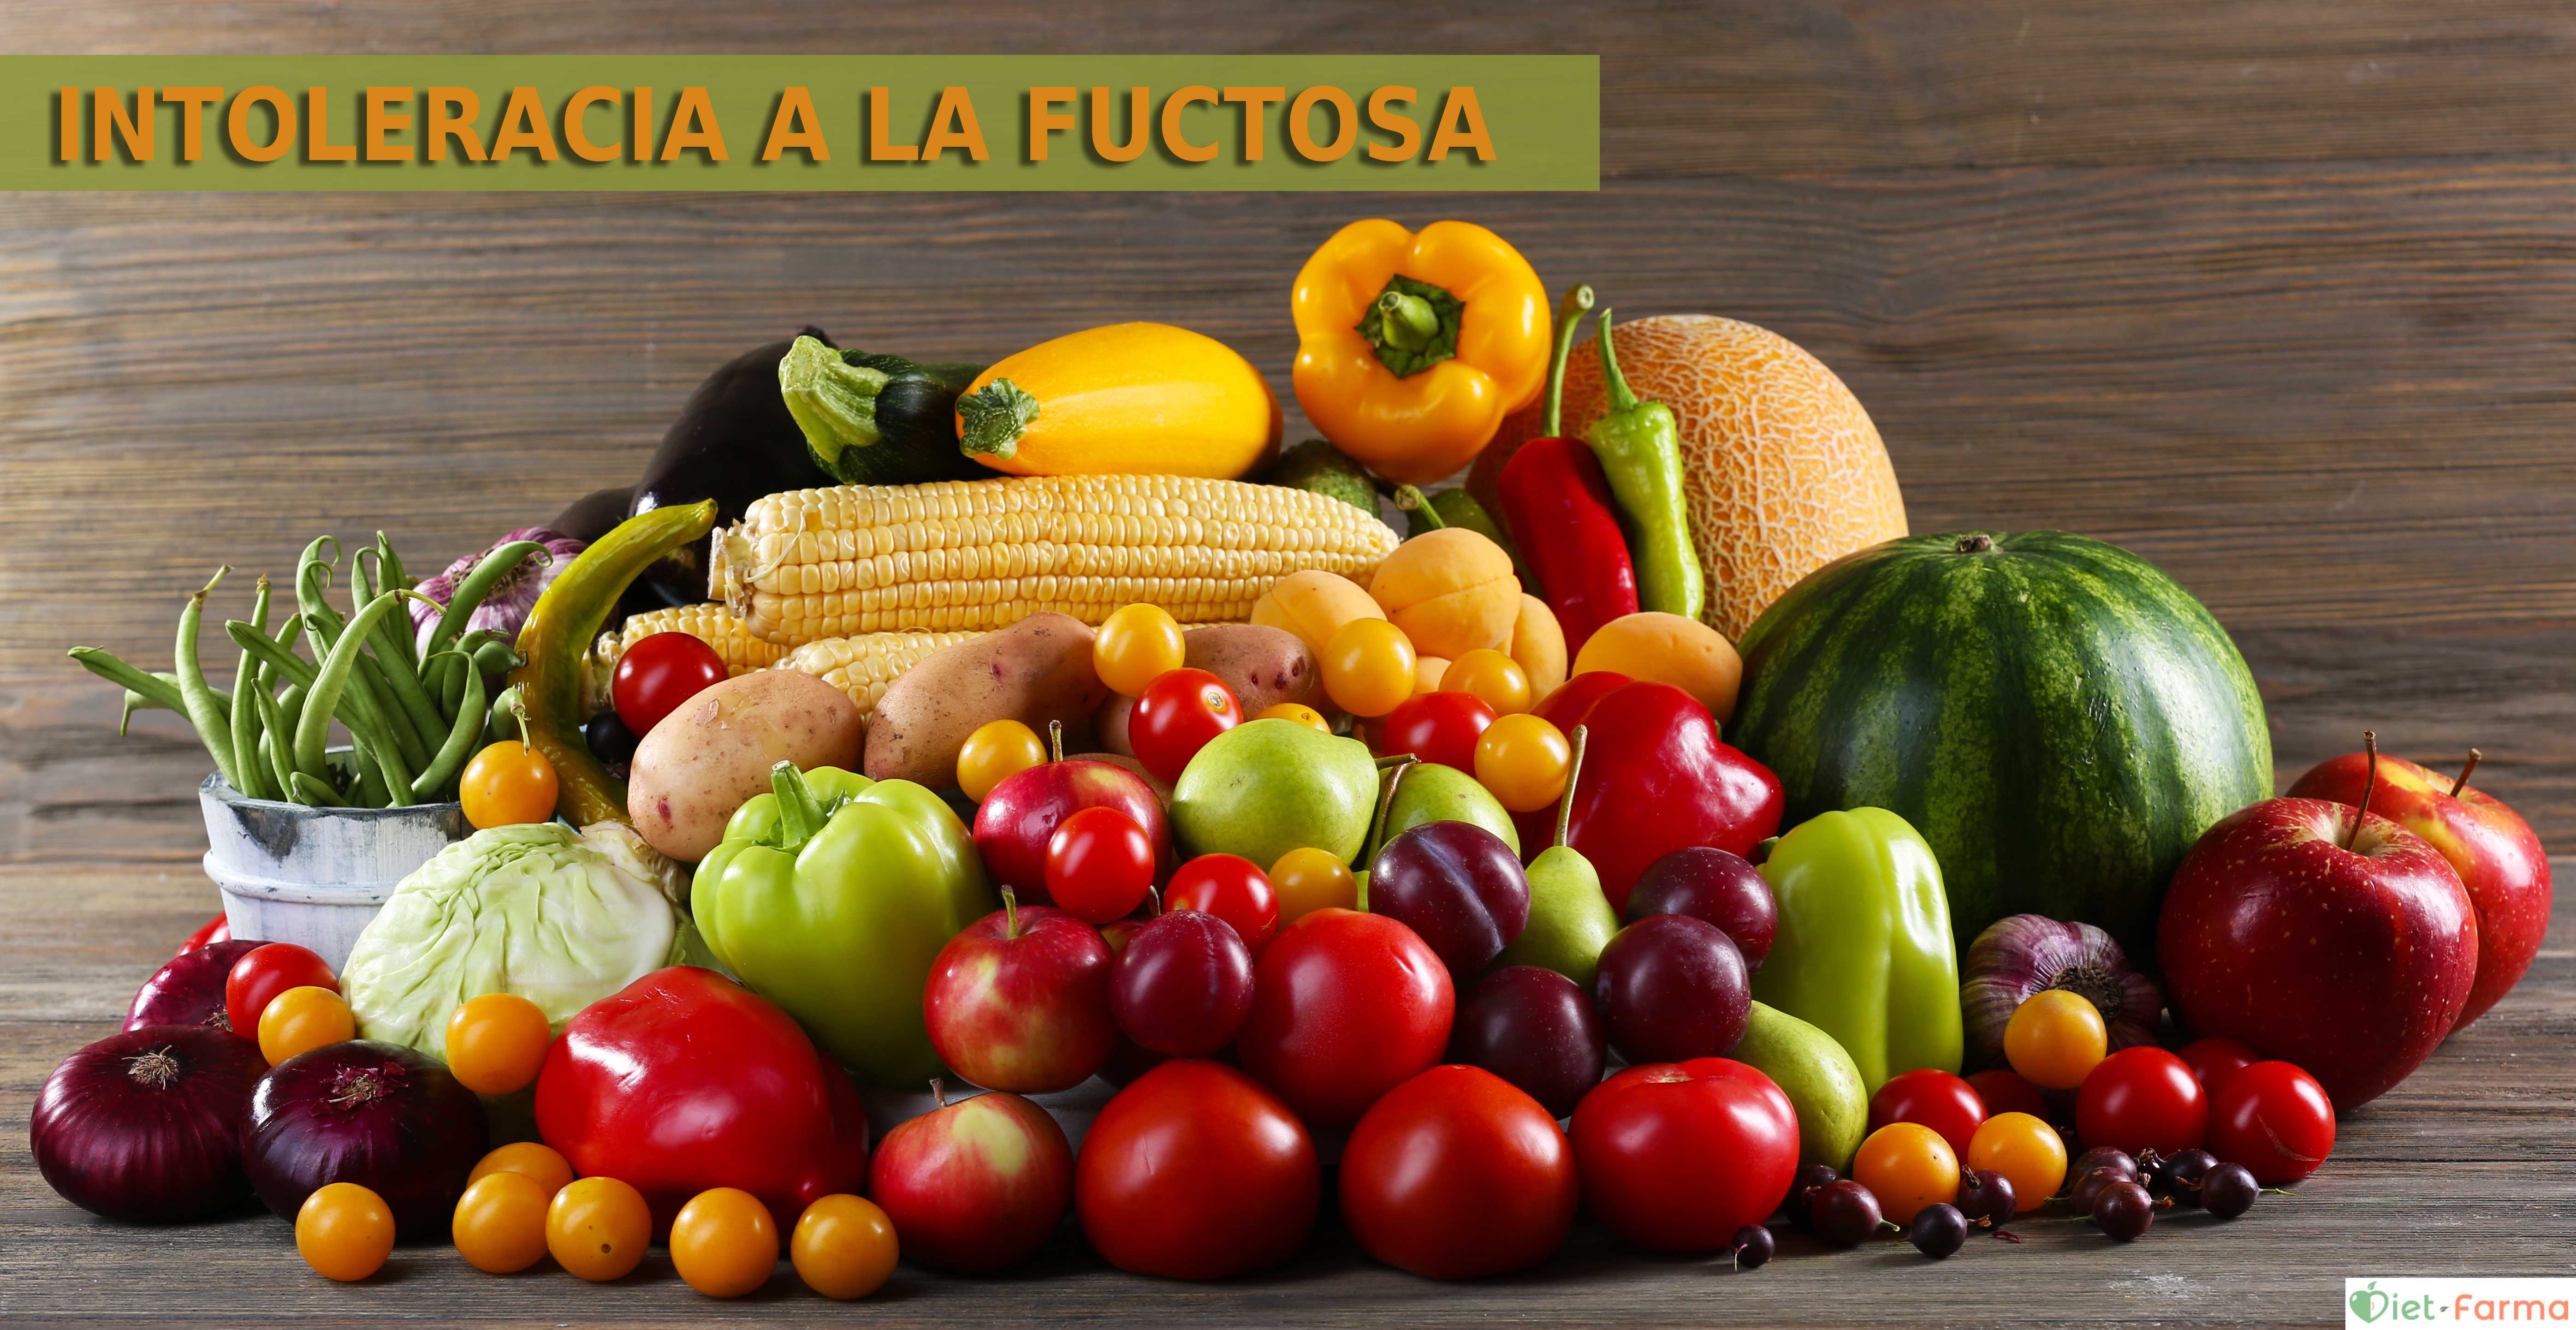 cesta con frutas y verduras